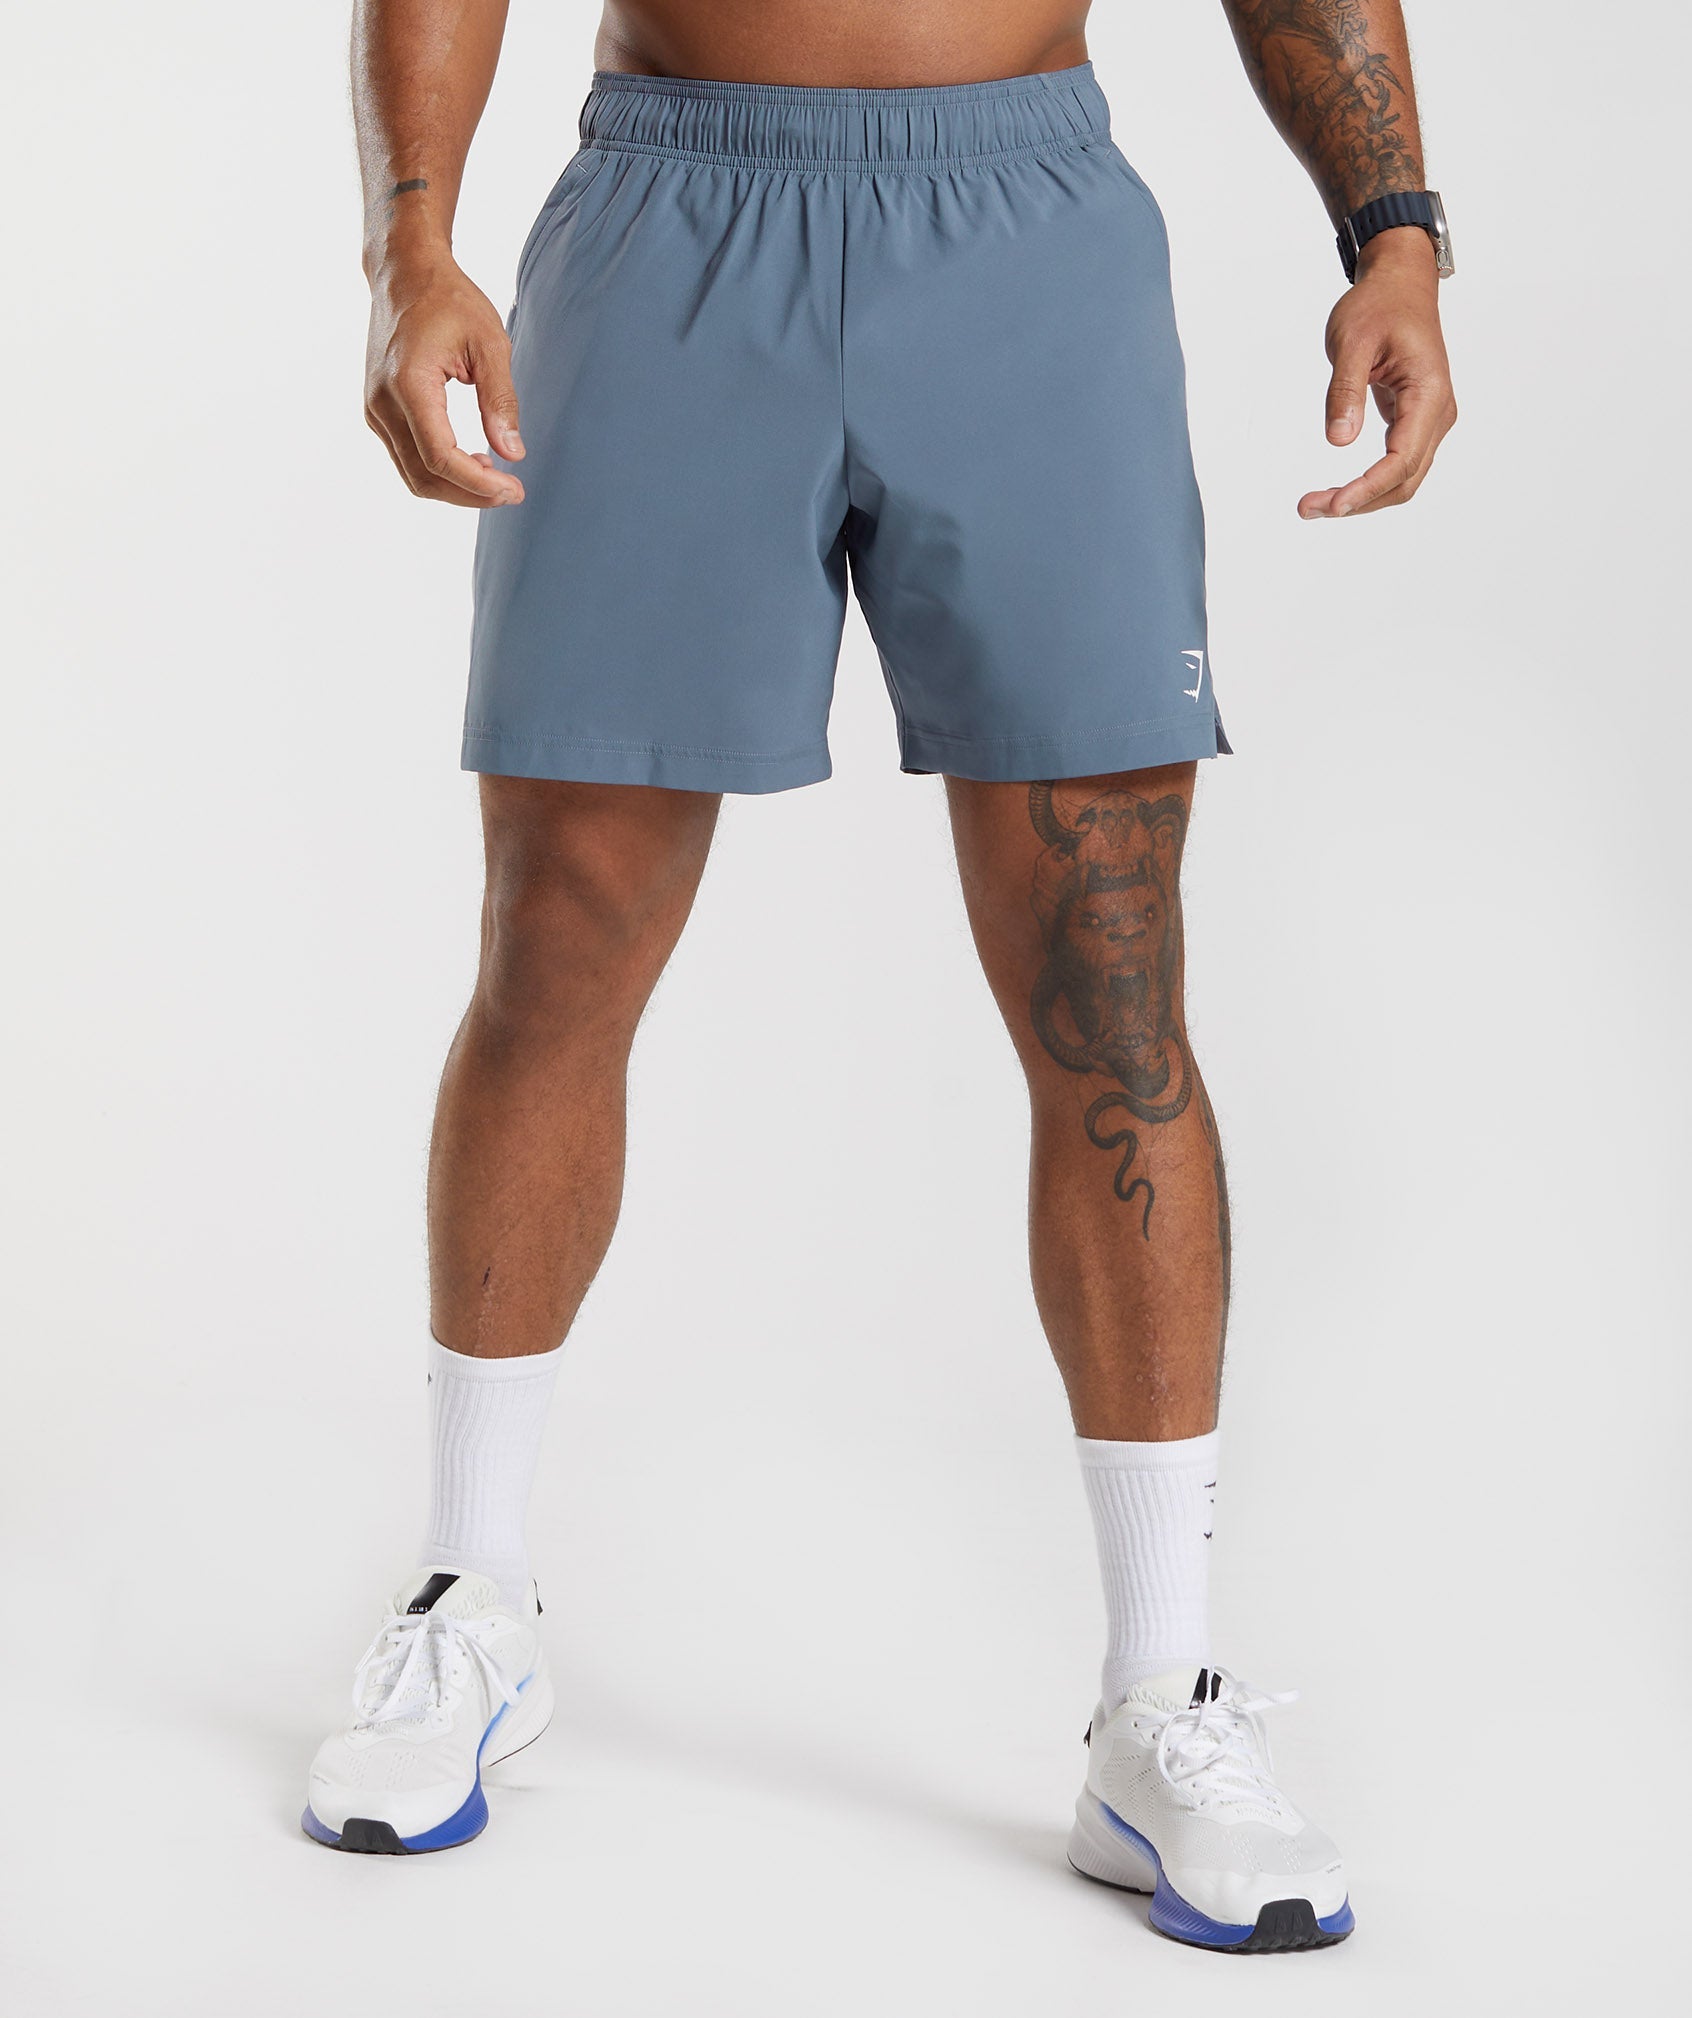 Gymshark Sport Shorts - Evening Blue/Drift Grey